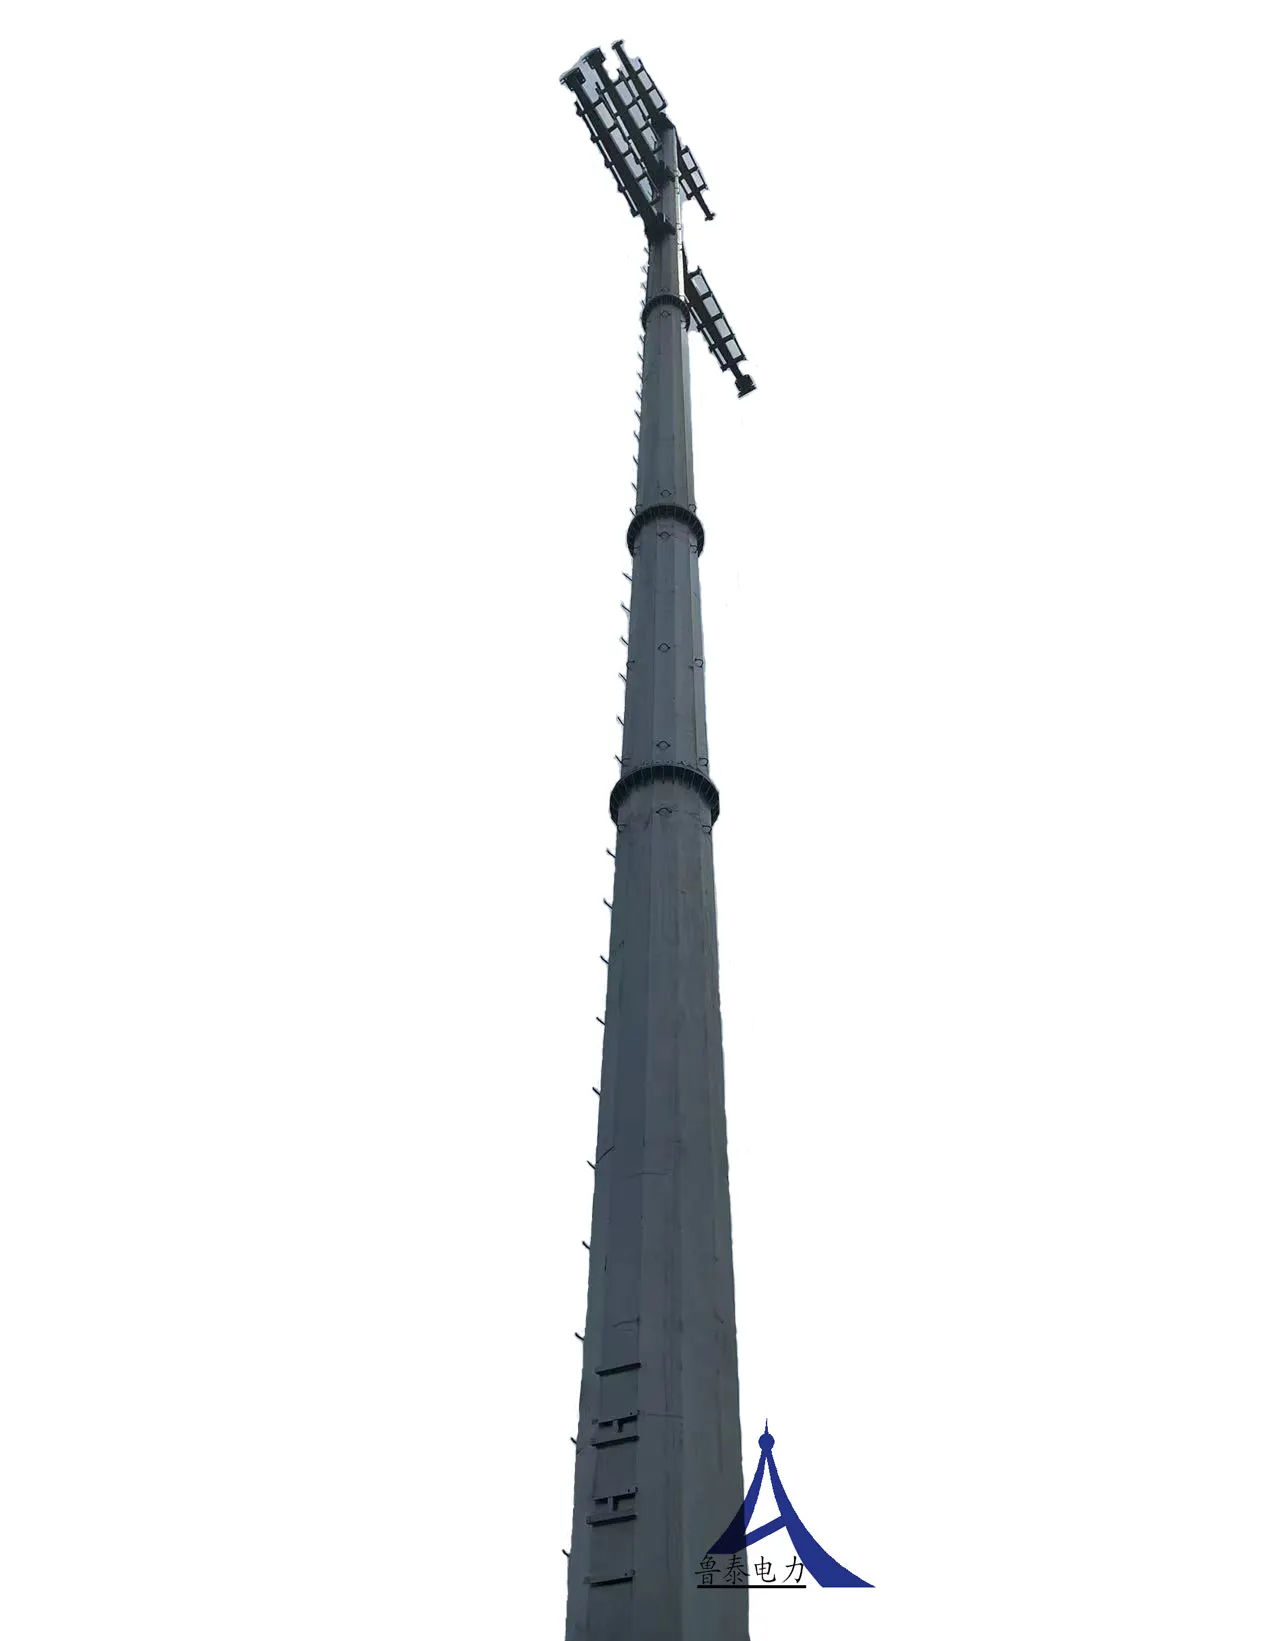 गर्म बेच बिजली पोल जस्ती आयरन टॉवर संचरण लाइन संचार के लिए प्रयोग किया जाता है के साथ अच्छी गुणवत्ता और अच्छी कीमत